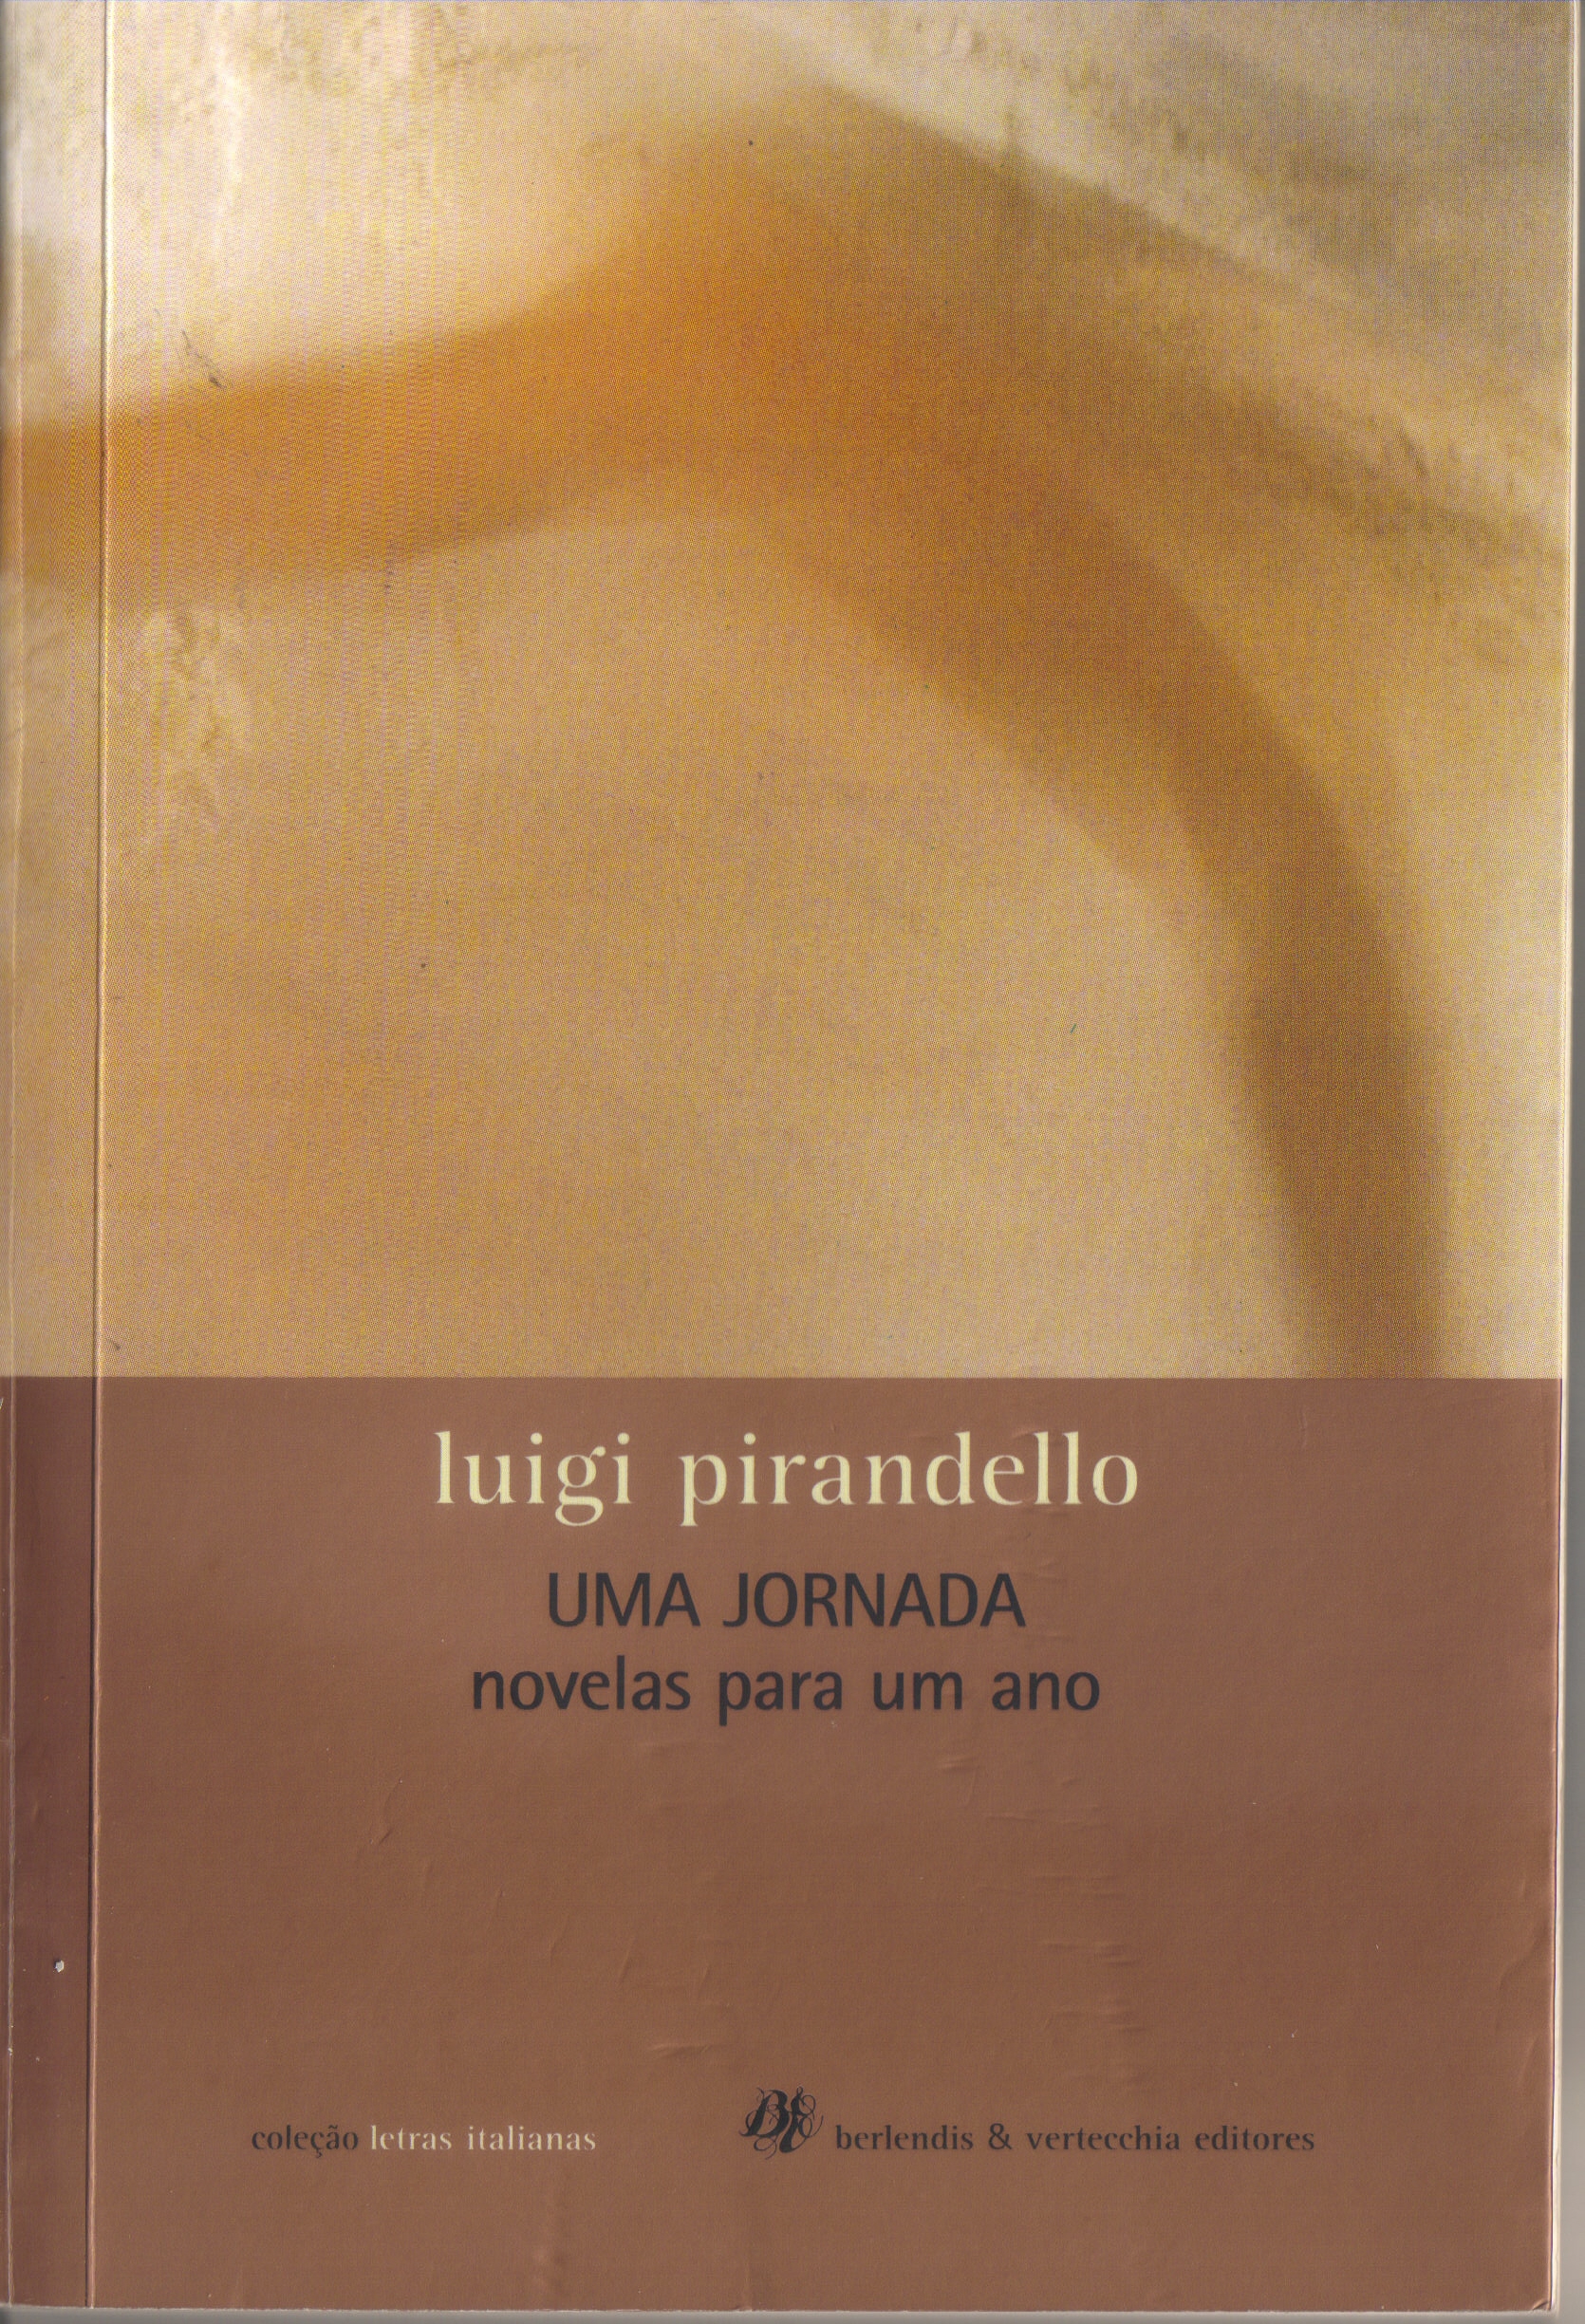 https://www.literaturabrasileira.ufsc.br/_images/obras/fd009.jpg